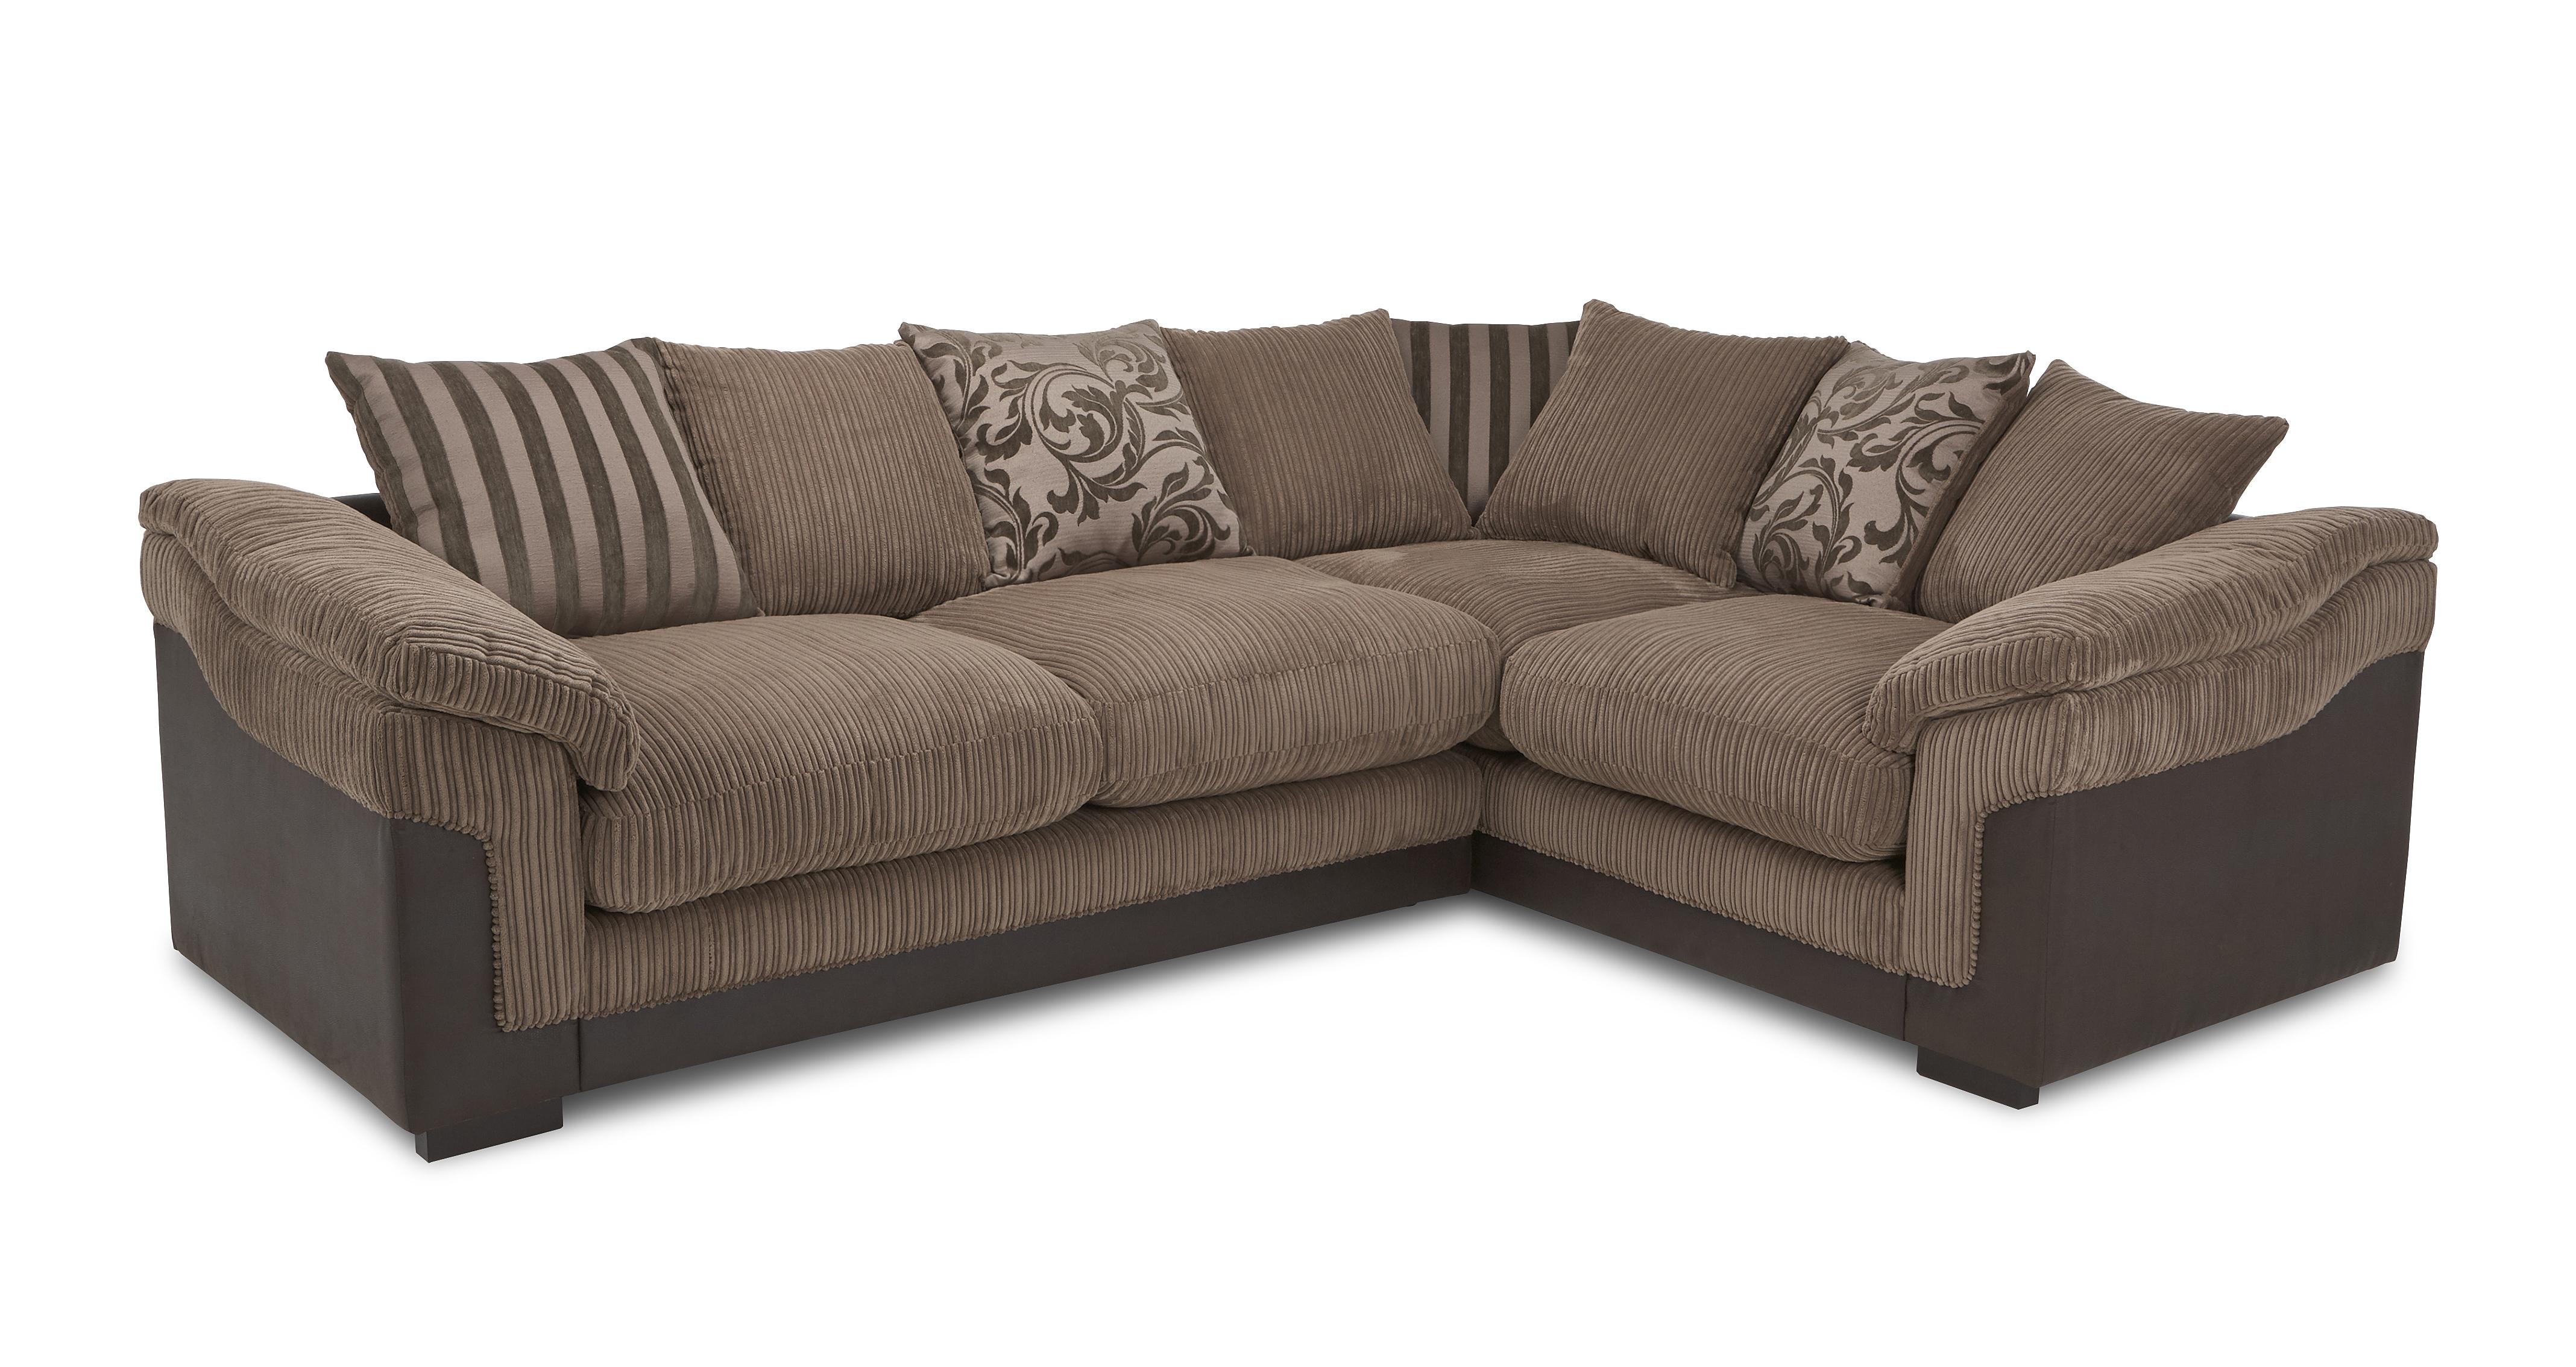 ebay uk sofa beds for sale